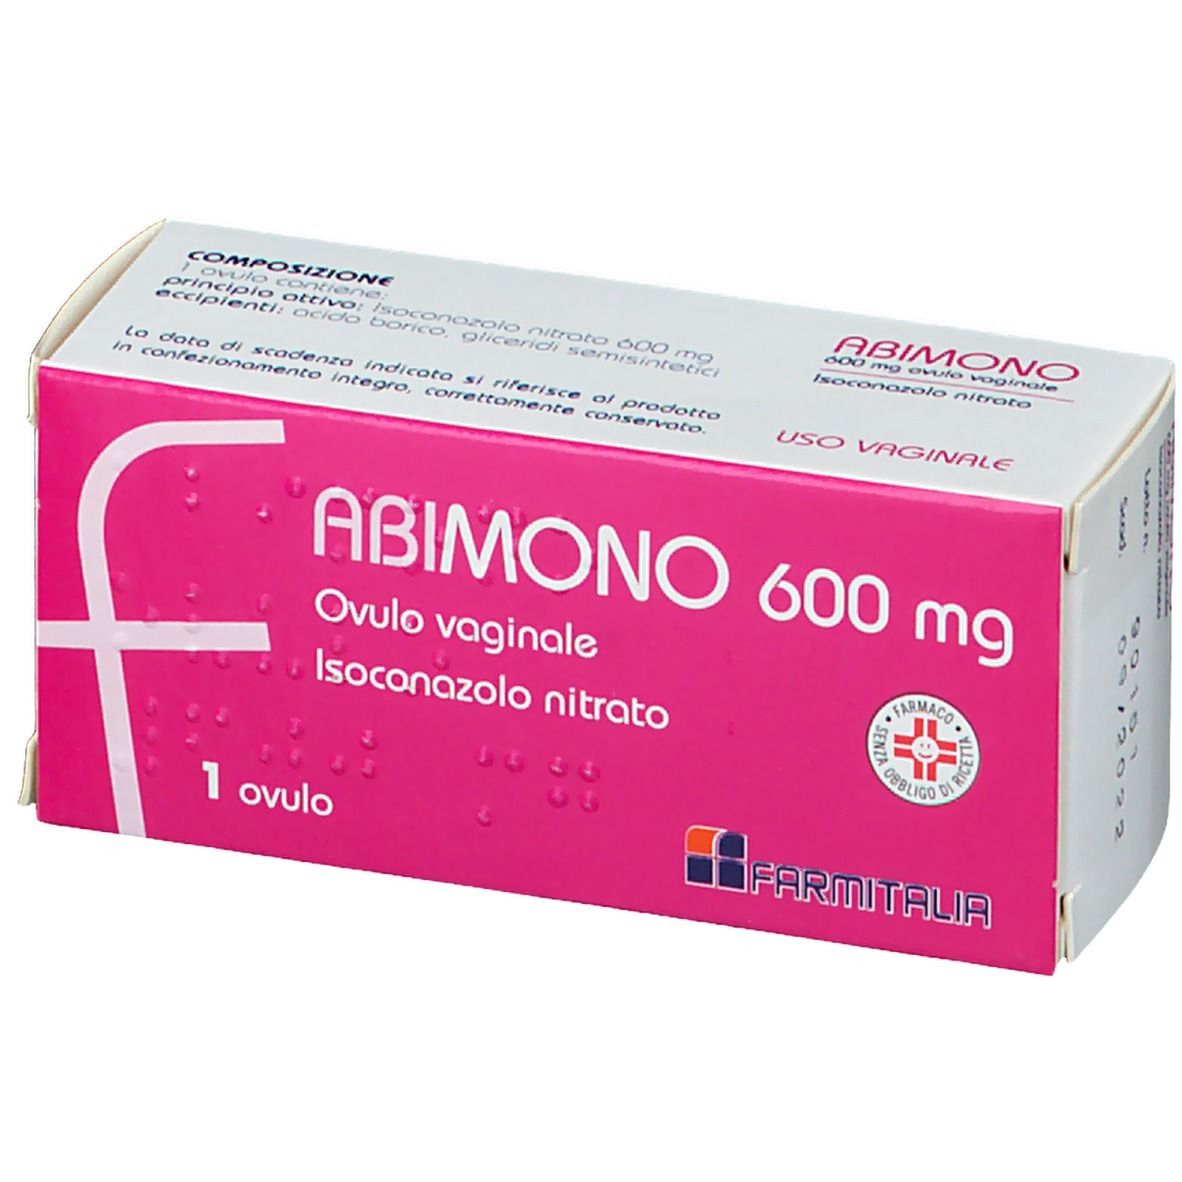 Abimono 1 Ovulo vaginale 600 mg